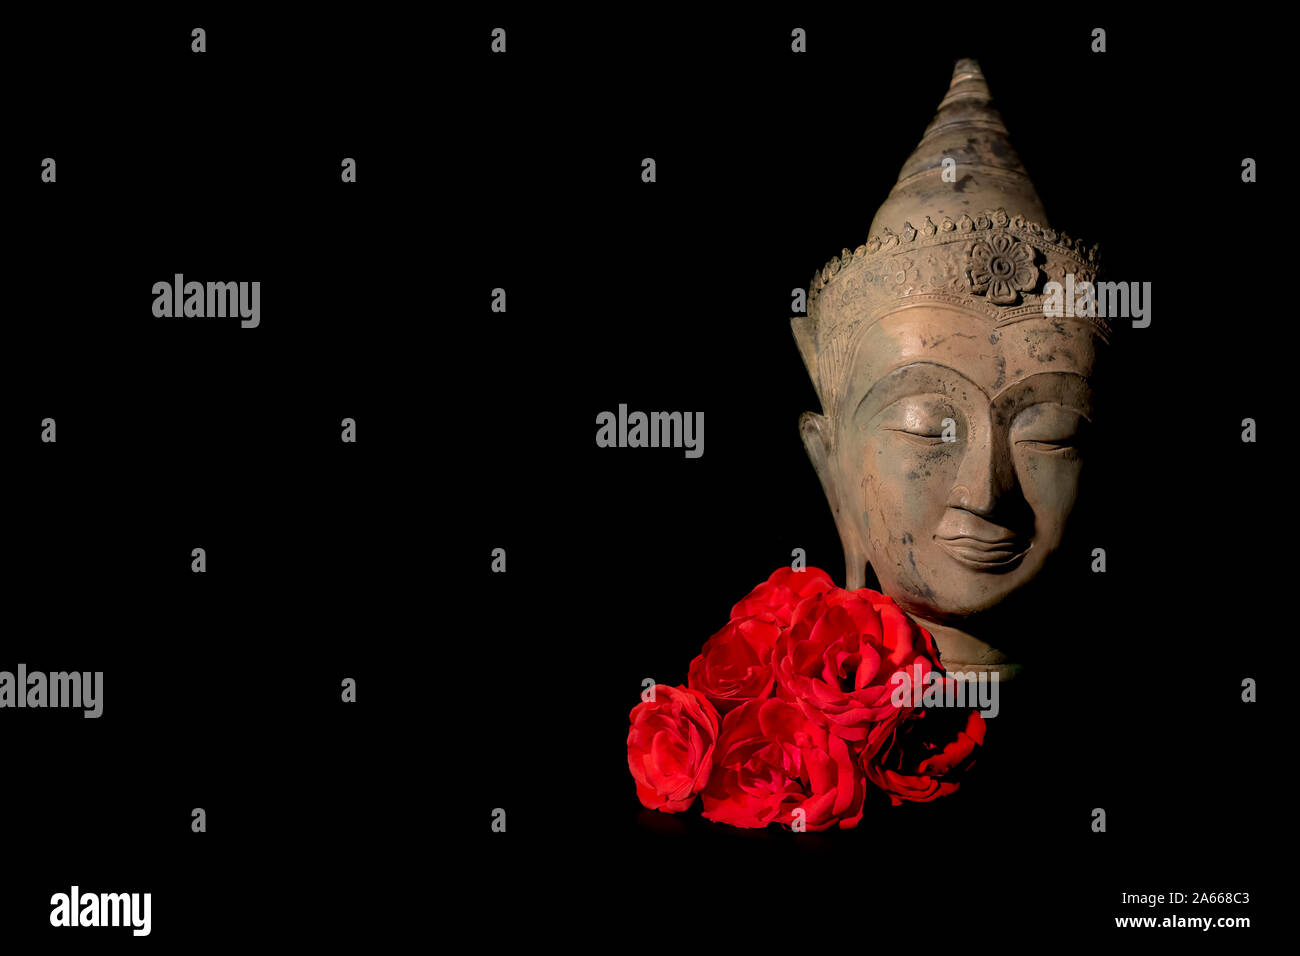 Frieden und Liebe. Serene traditionelle Buddha Kopf Statue mit tief roten Rosen. Die Suche nach spiritueller Erleuchtung durch Meditation. Zen Buddhismus Reinheit und min. Stockfoto